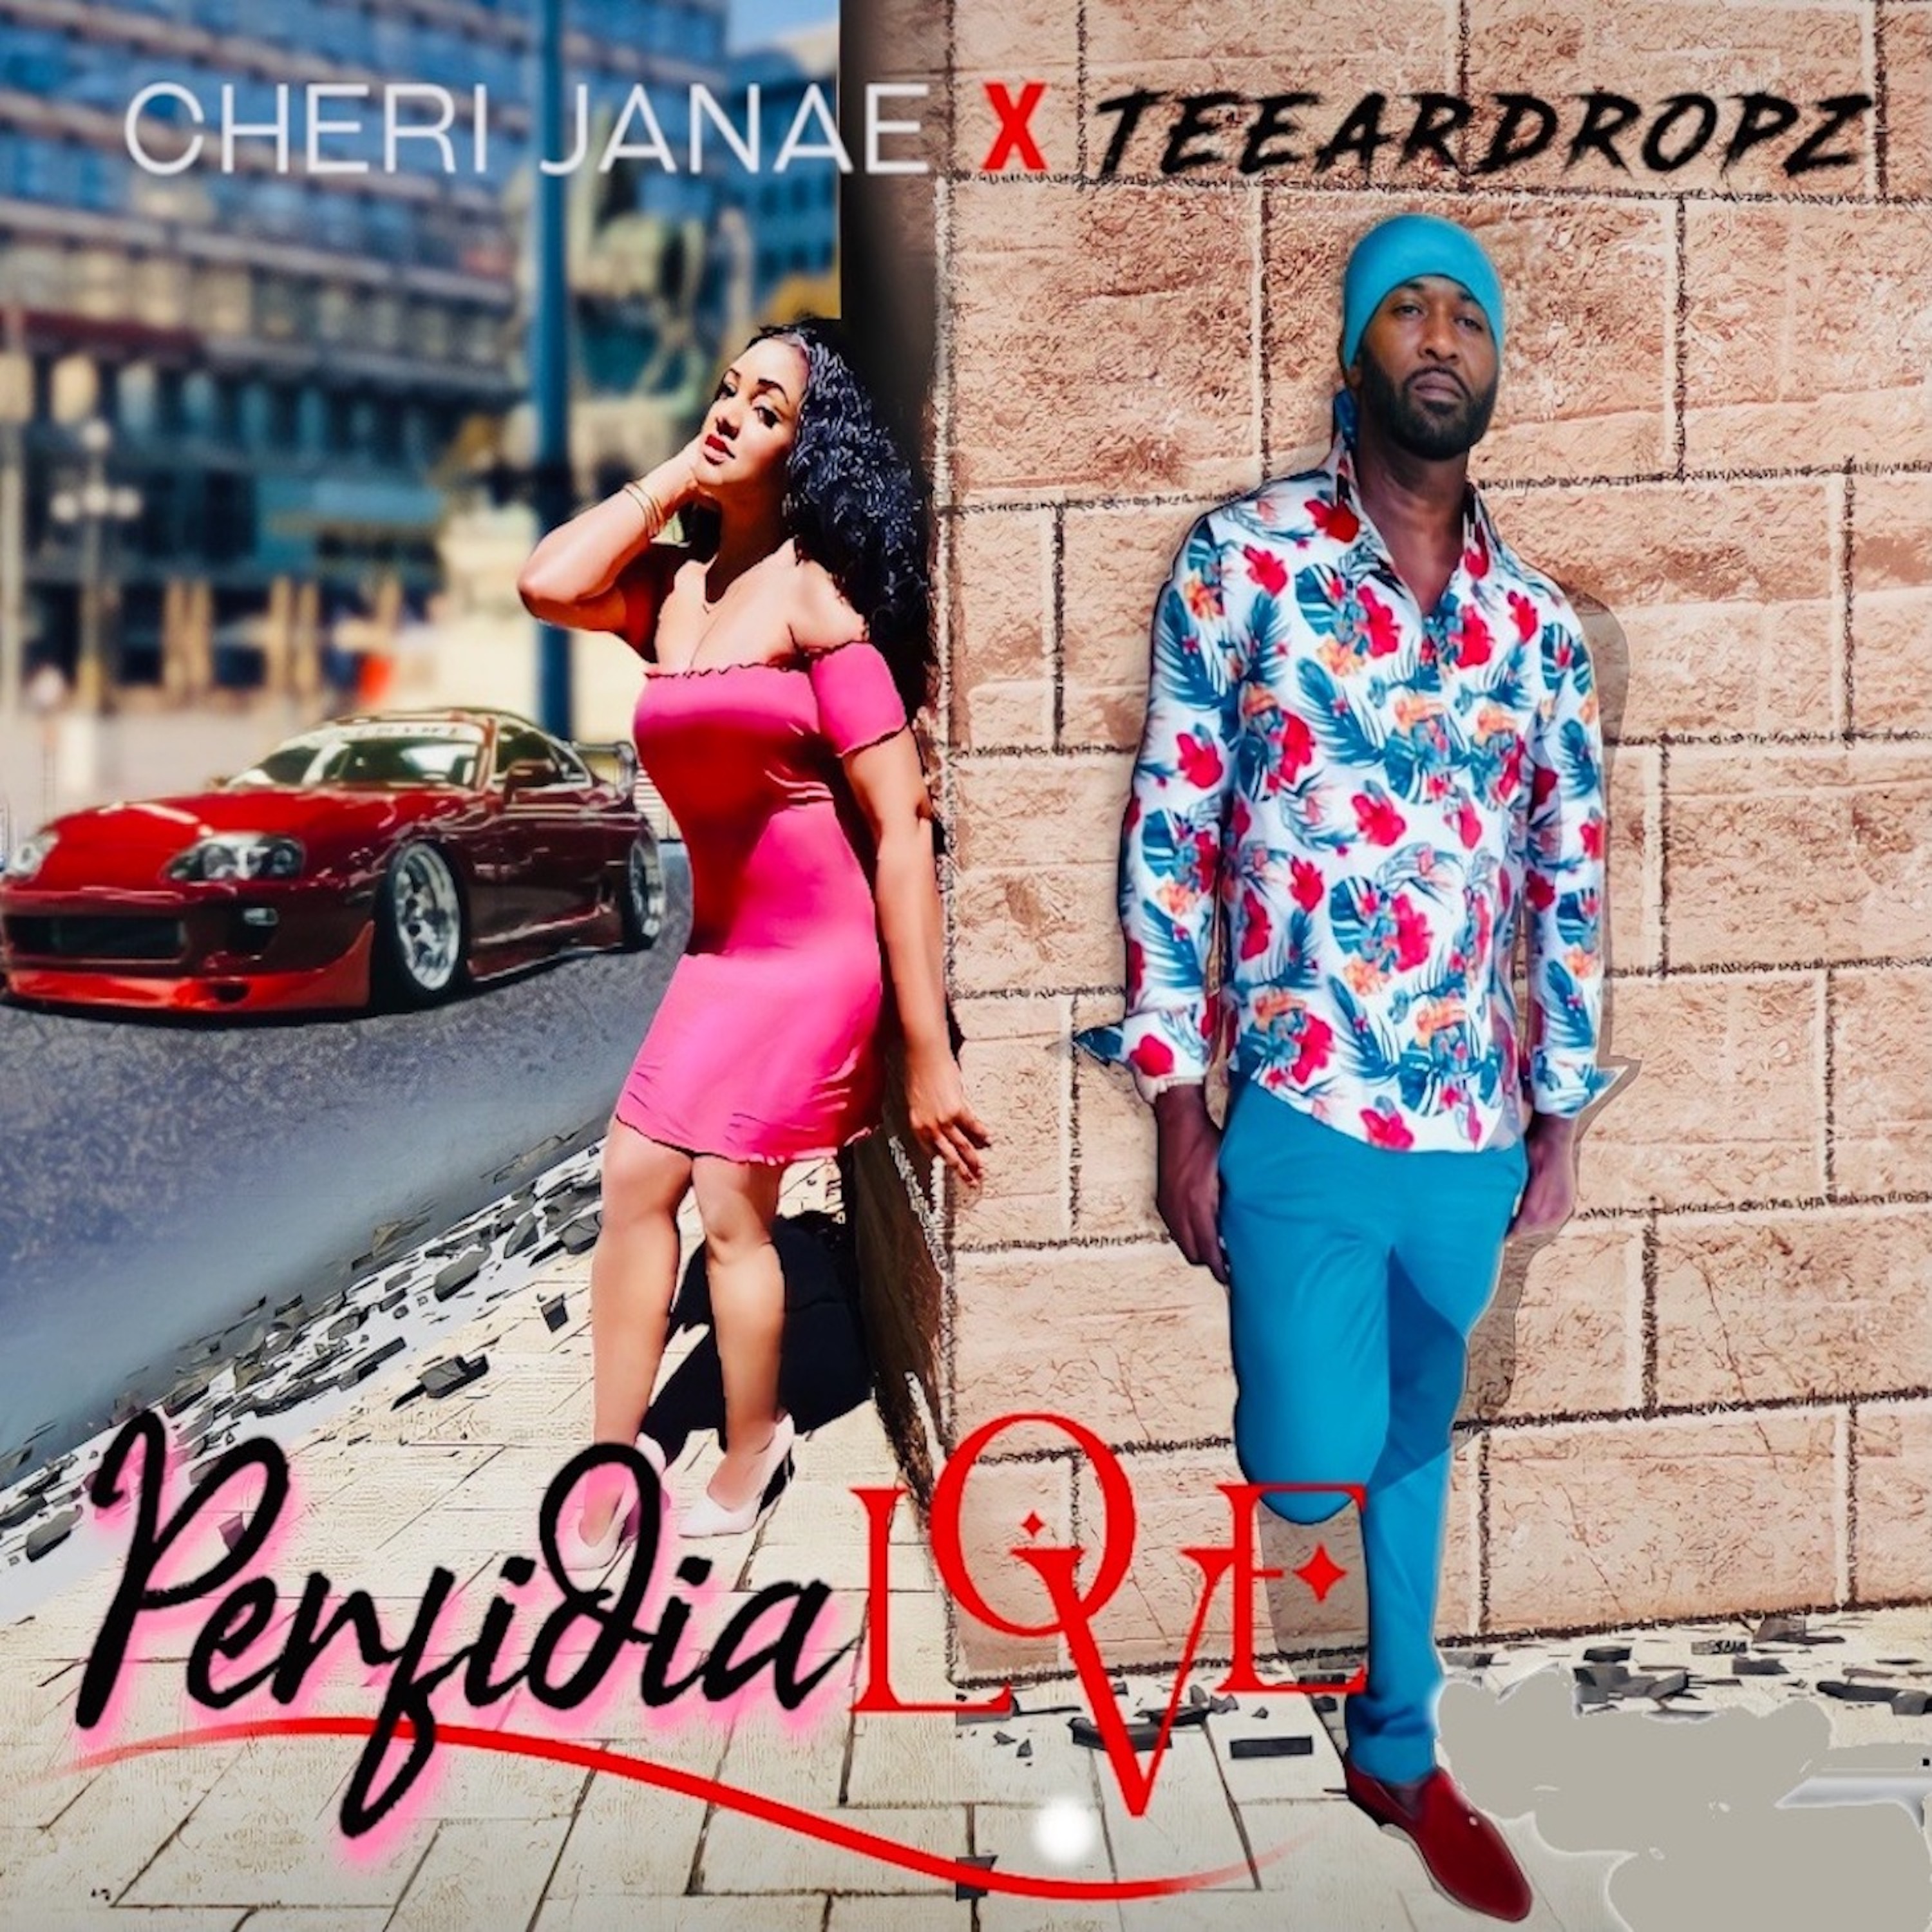 Cheri Janae x Teeardropz - Perfidia Love